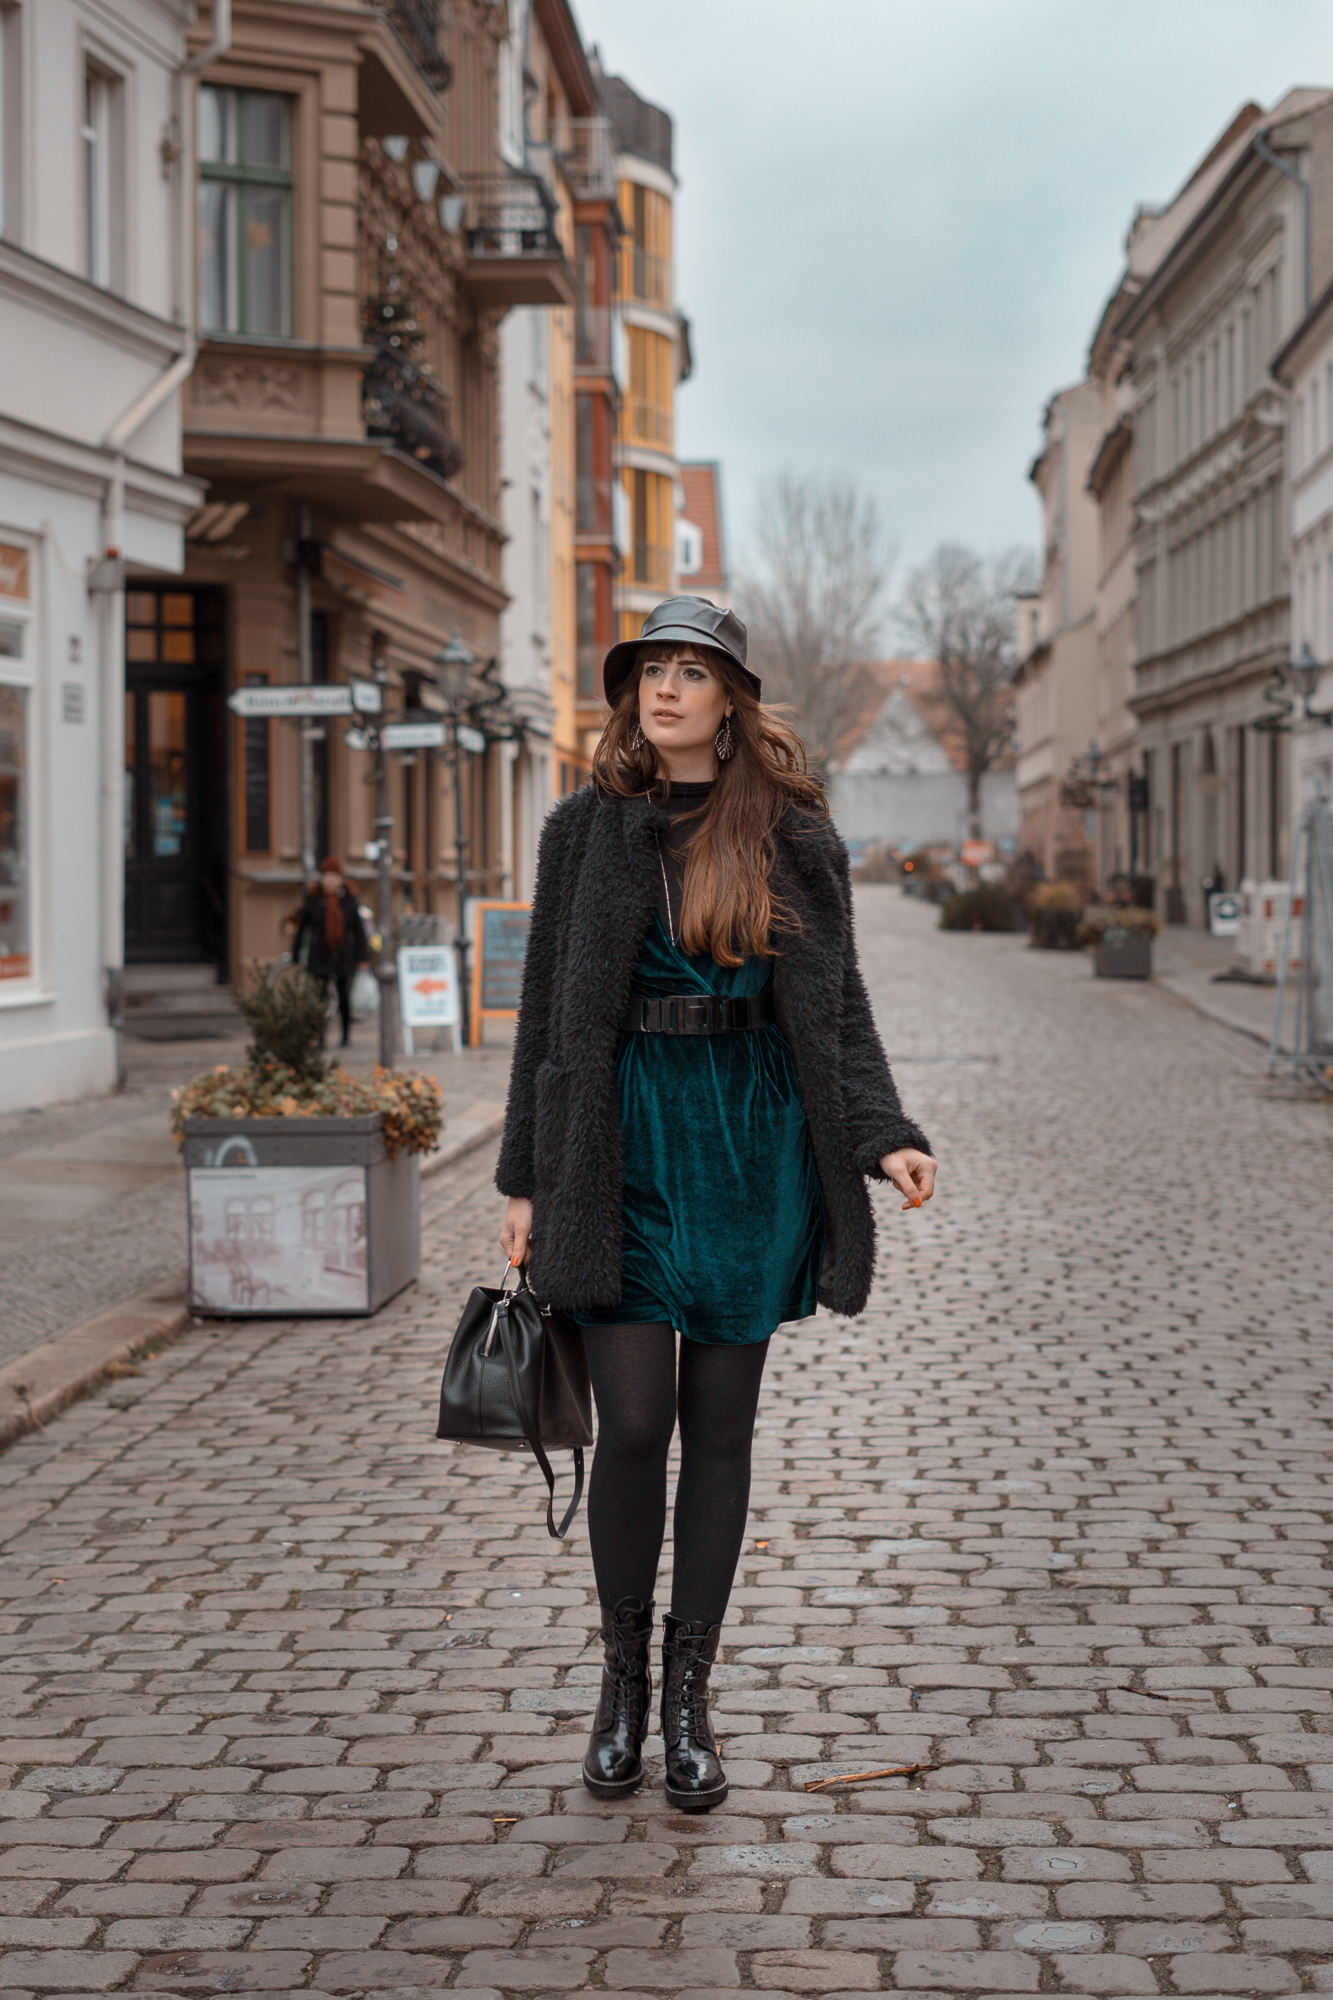 Leder Fischerhut mit Samtkleid-Pinafore Samt Kleid-Winteroutfit 2019-Anglerhut-Bucket Hat-Modeblog Berlin-andysparkles